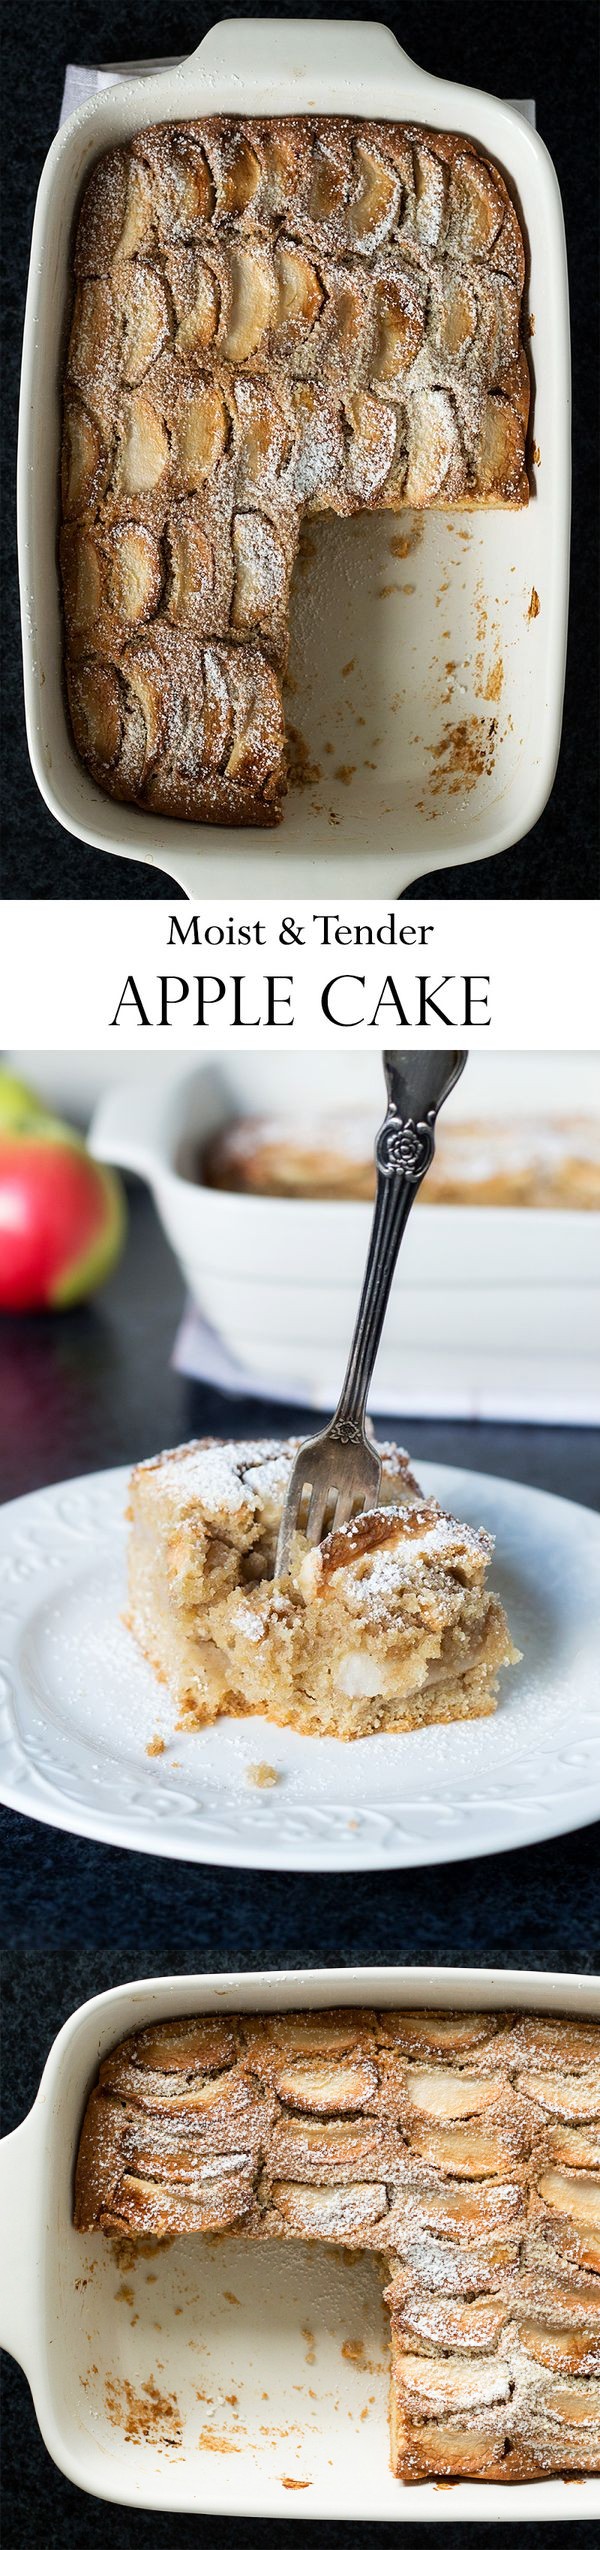 Moist & Tender Apple Cake